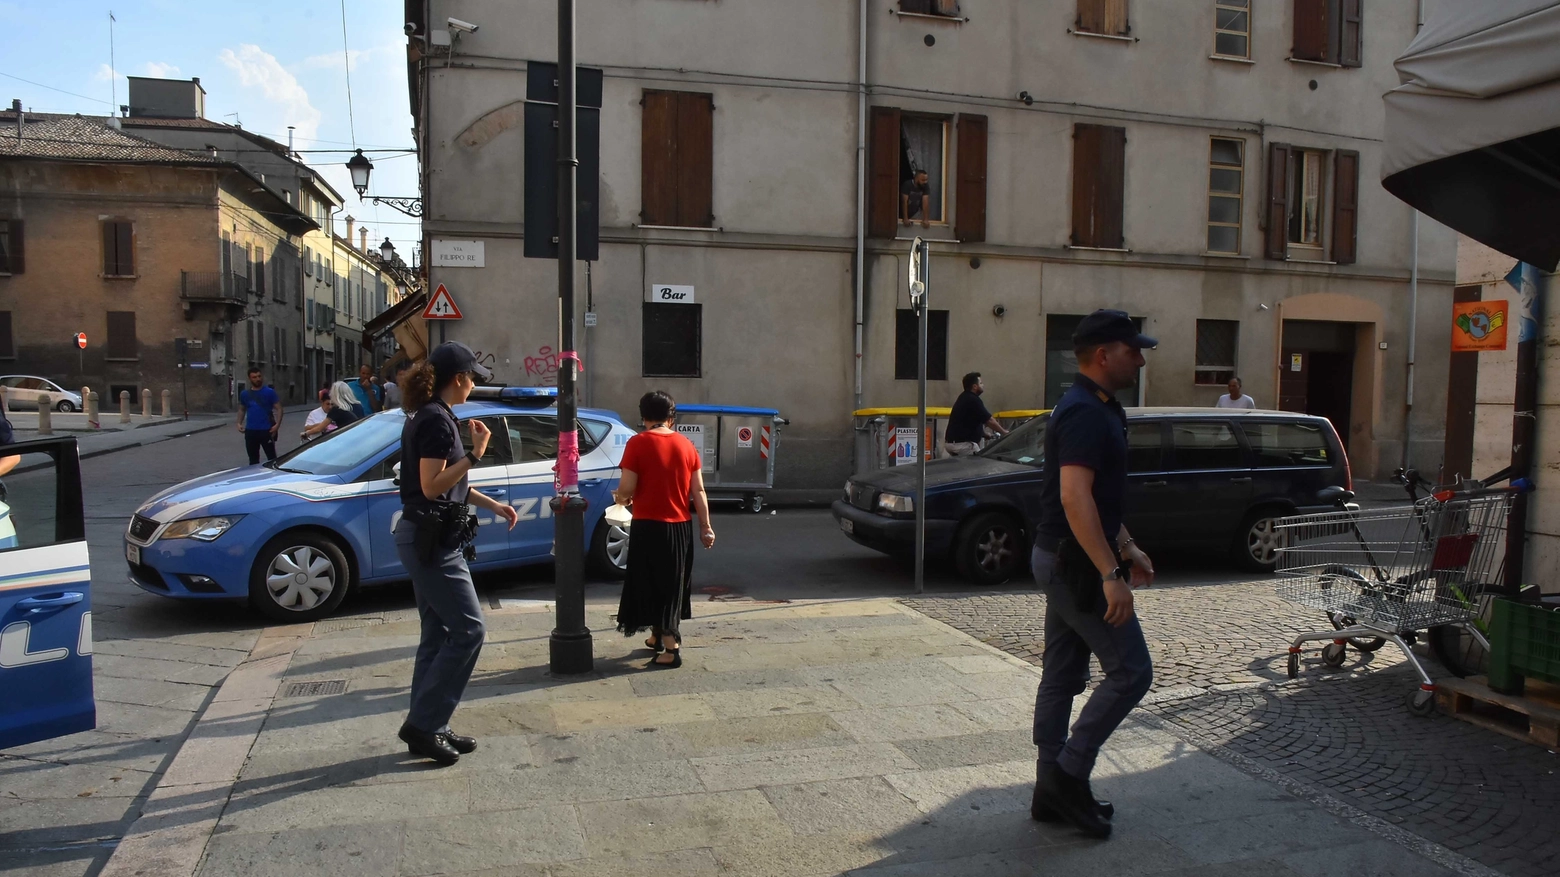 L'angolo di via Roma dove è avvenuto l'accoltellamento (foto Artioli)